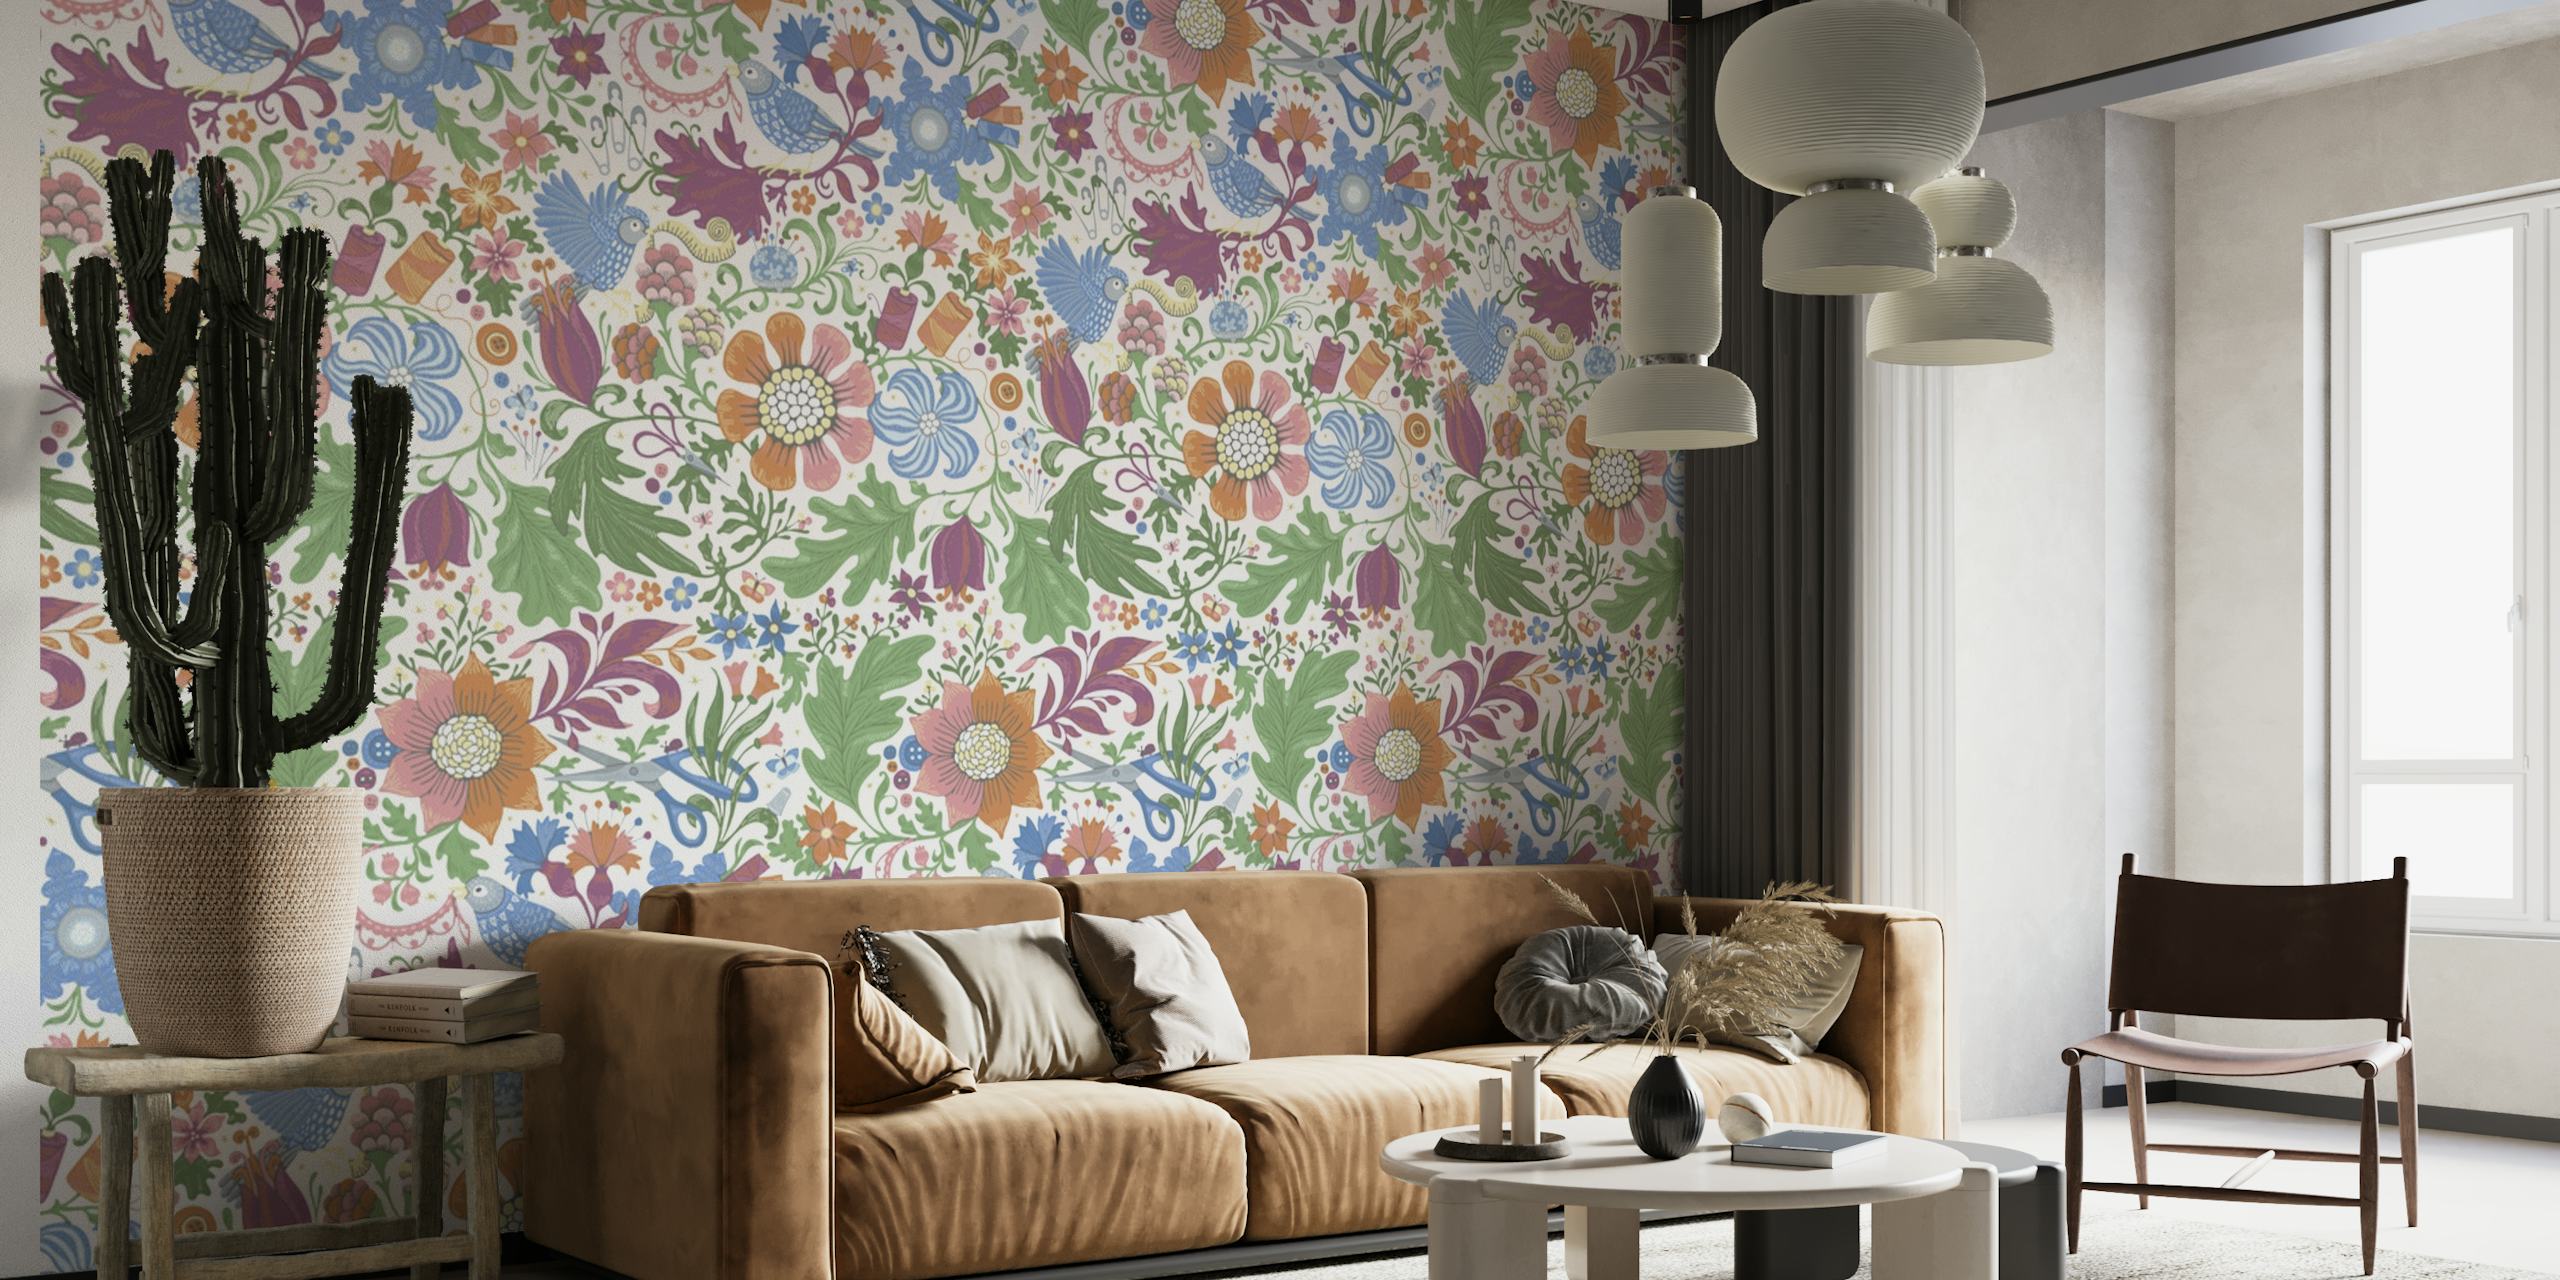 Elegantan zidni mural s šarenim bojama i cvjetnim uzorkom u nježno bijeloj boji pastelnih boja